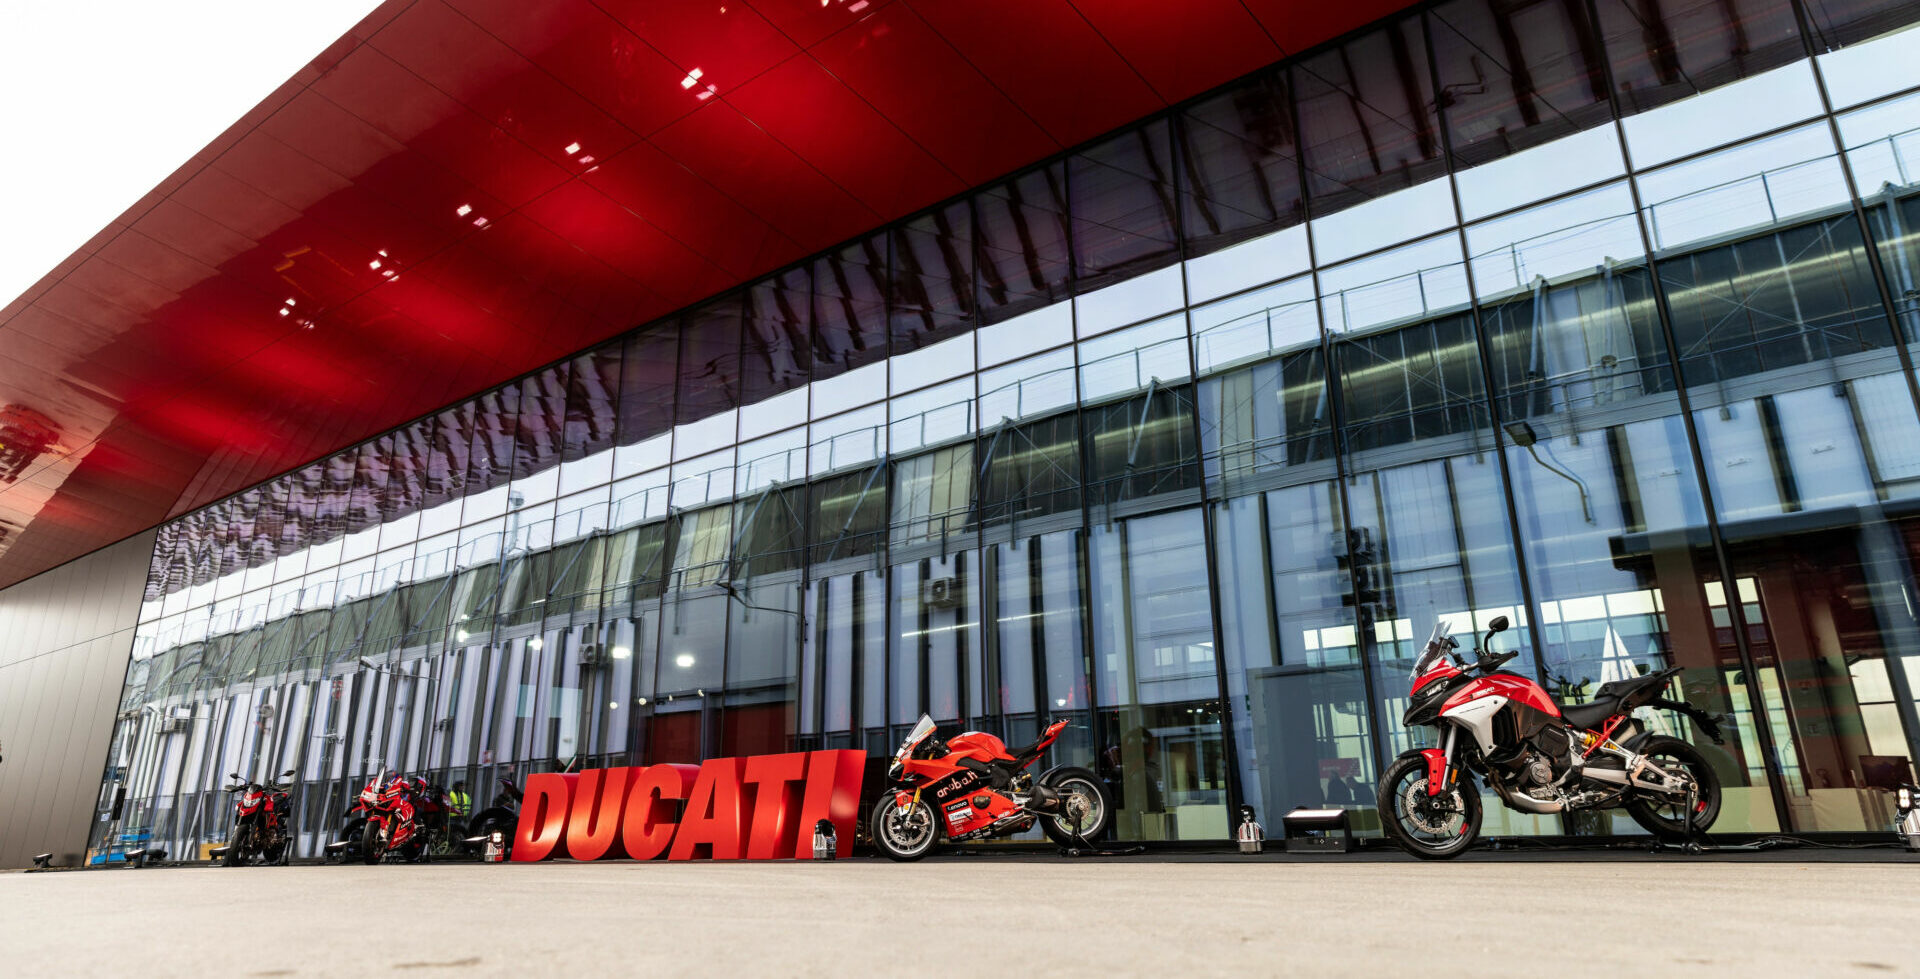 Ducati's new 13,000-square-foot eco-friendly Finitura e Delibera Estetica building at Ducati's production facility in Bologna, Italy. Photo courtesy Ducati.